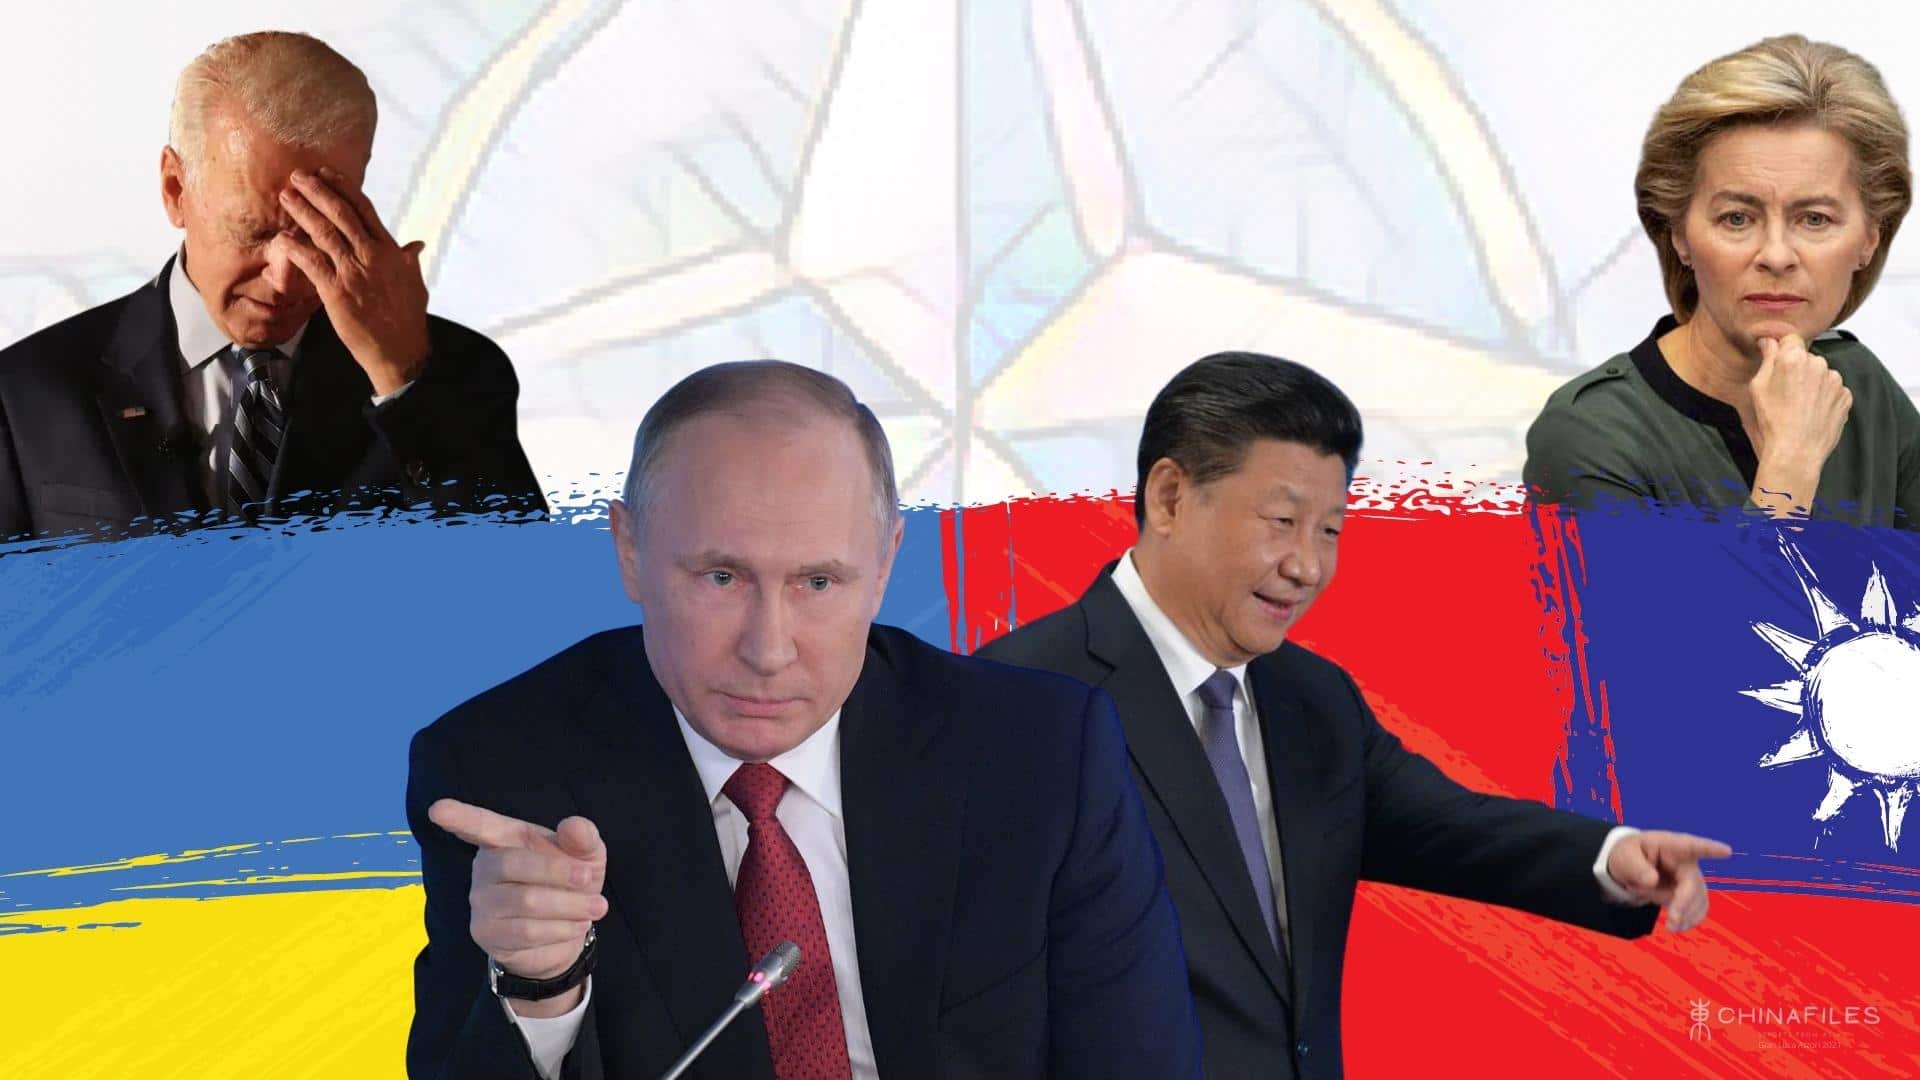 USA-Cina-Russia e i loro rapporti pericolosi se non esplosivi.